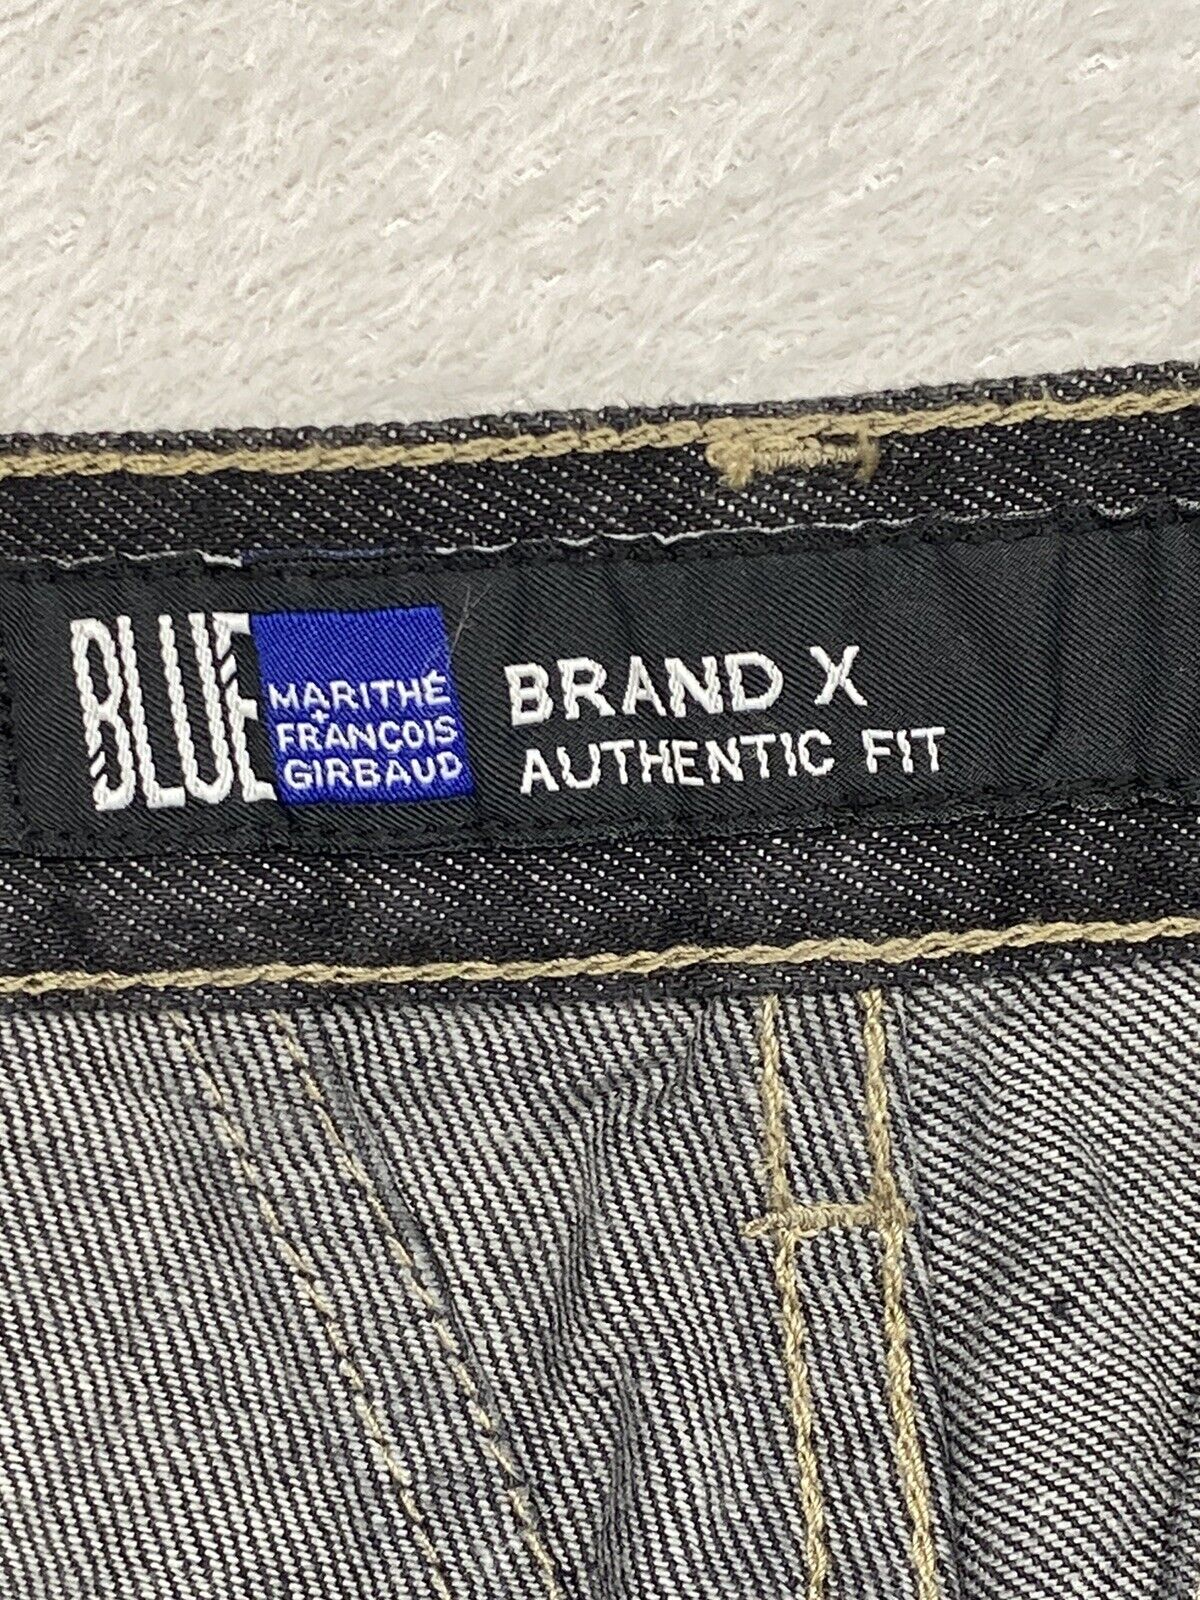 Marithe Francois Girbaud Blue Brand X Black Denim Jeans Men's Pants Sz 38S  X 26